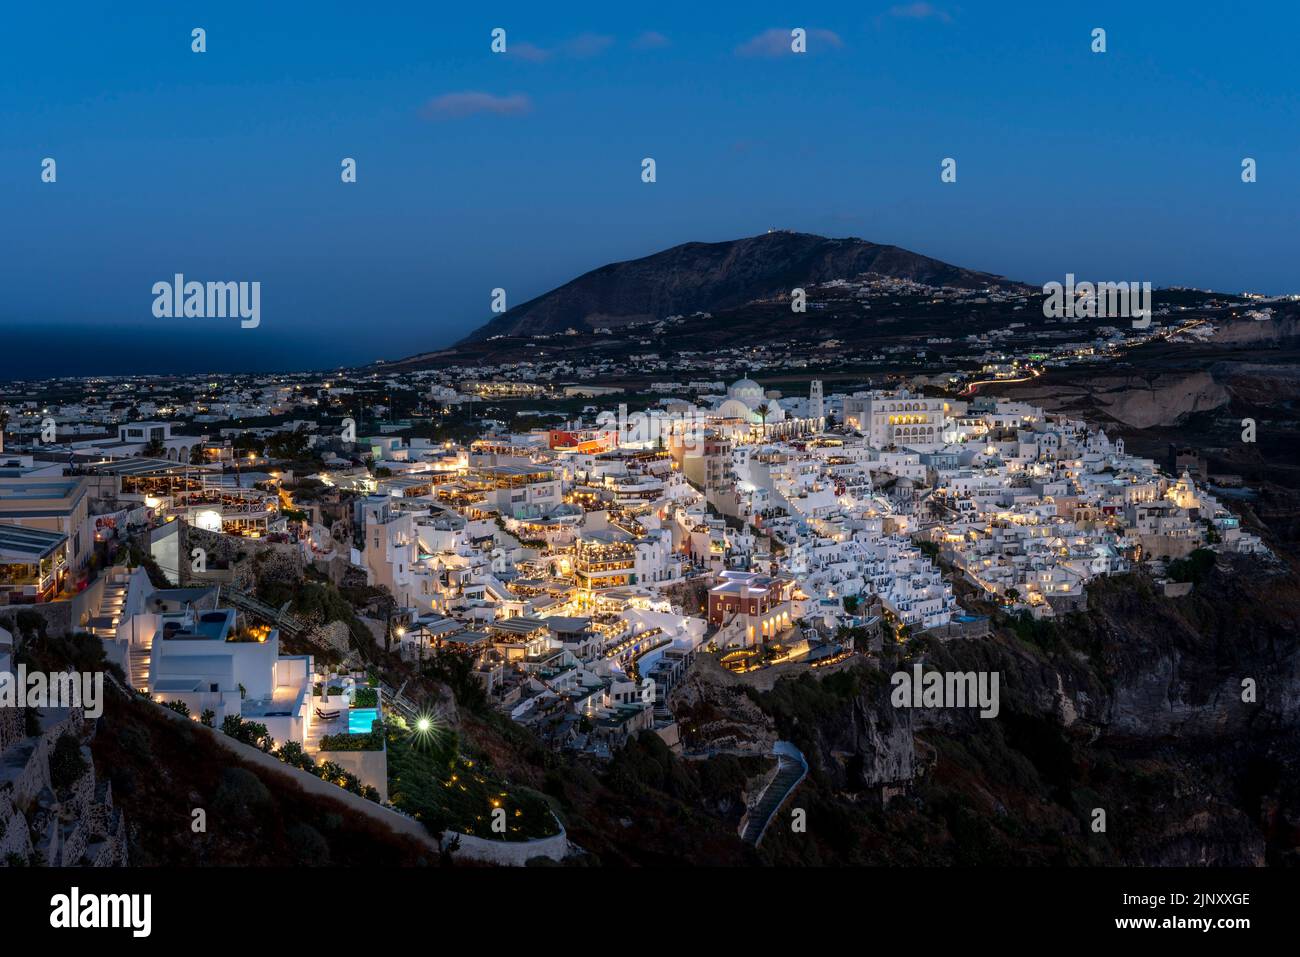 Vue sur la ville principale de Thira (Thera) sur l'île de Santorini, les îles grecques, la Grèce. Banque D'Images